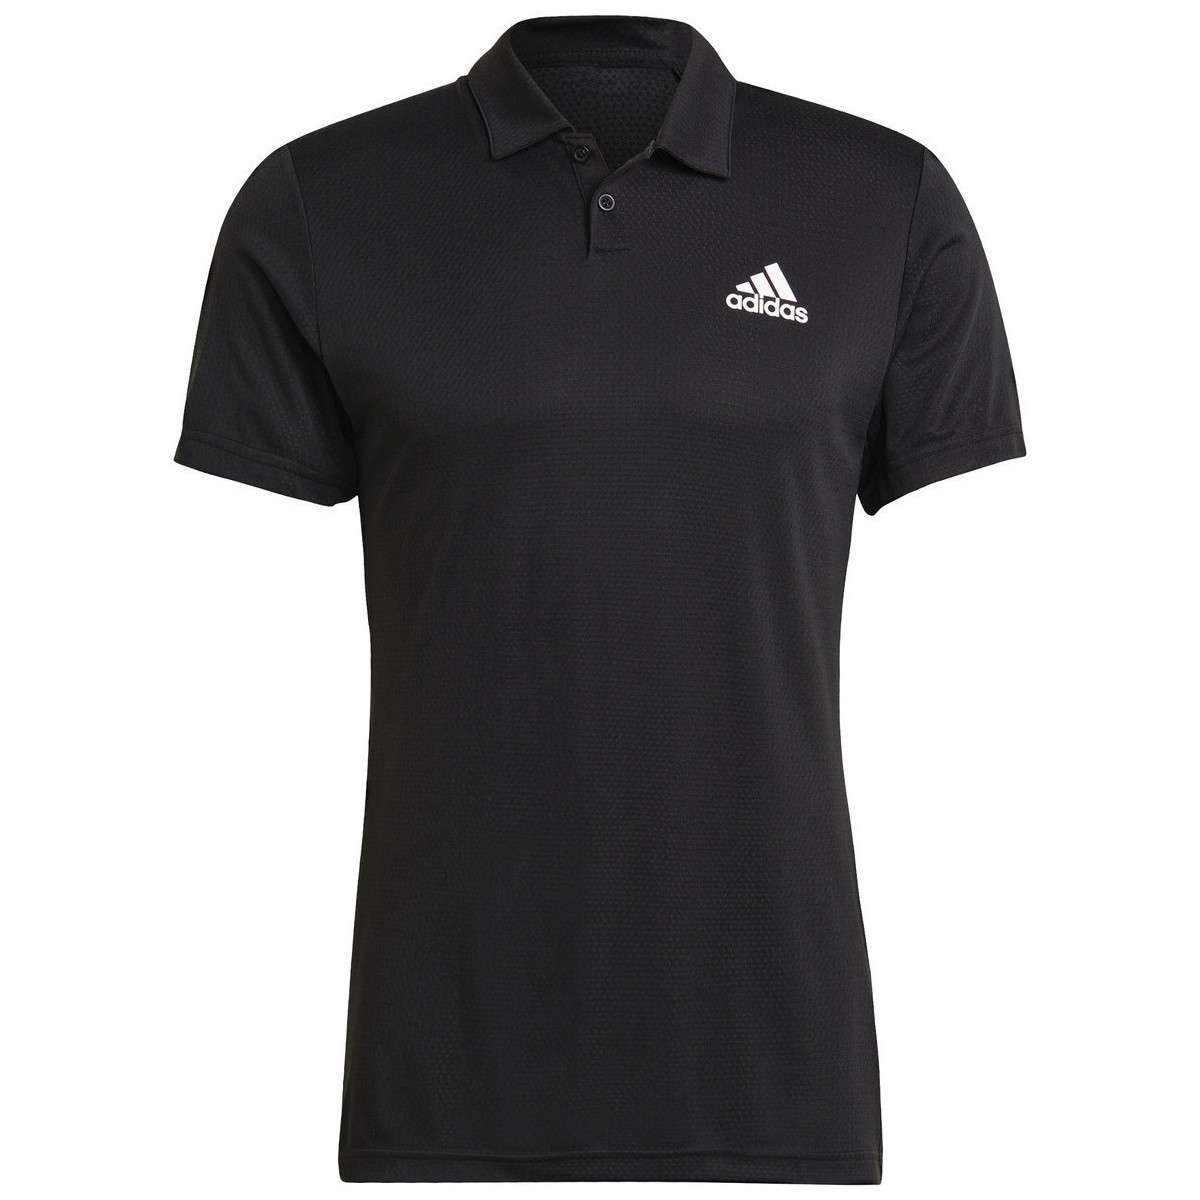 Vêtements Homme Débardeurs / T-shirts sans manche adidas Originals Heat Rdy Tennis Polo Noir